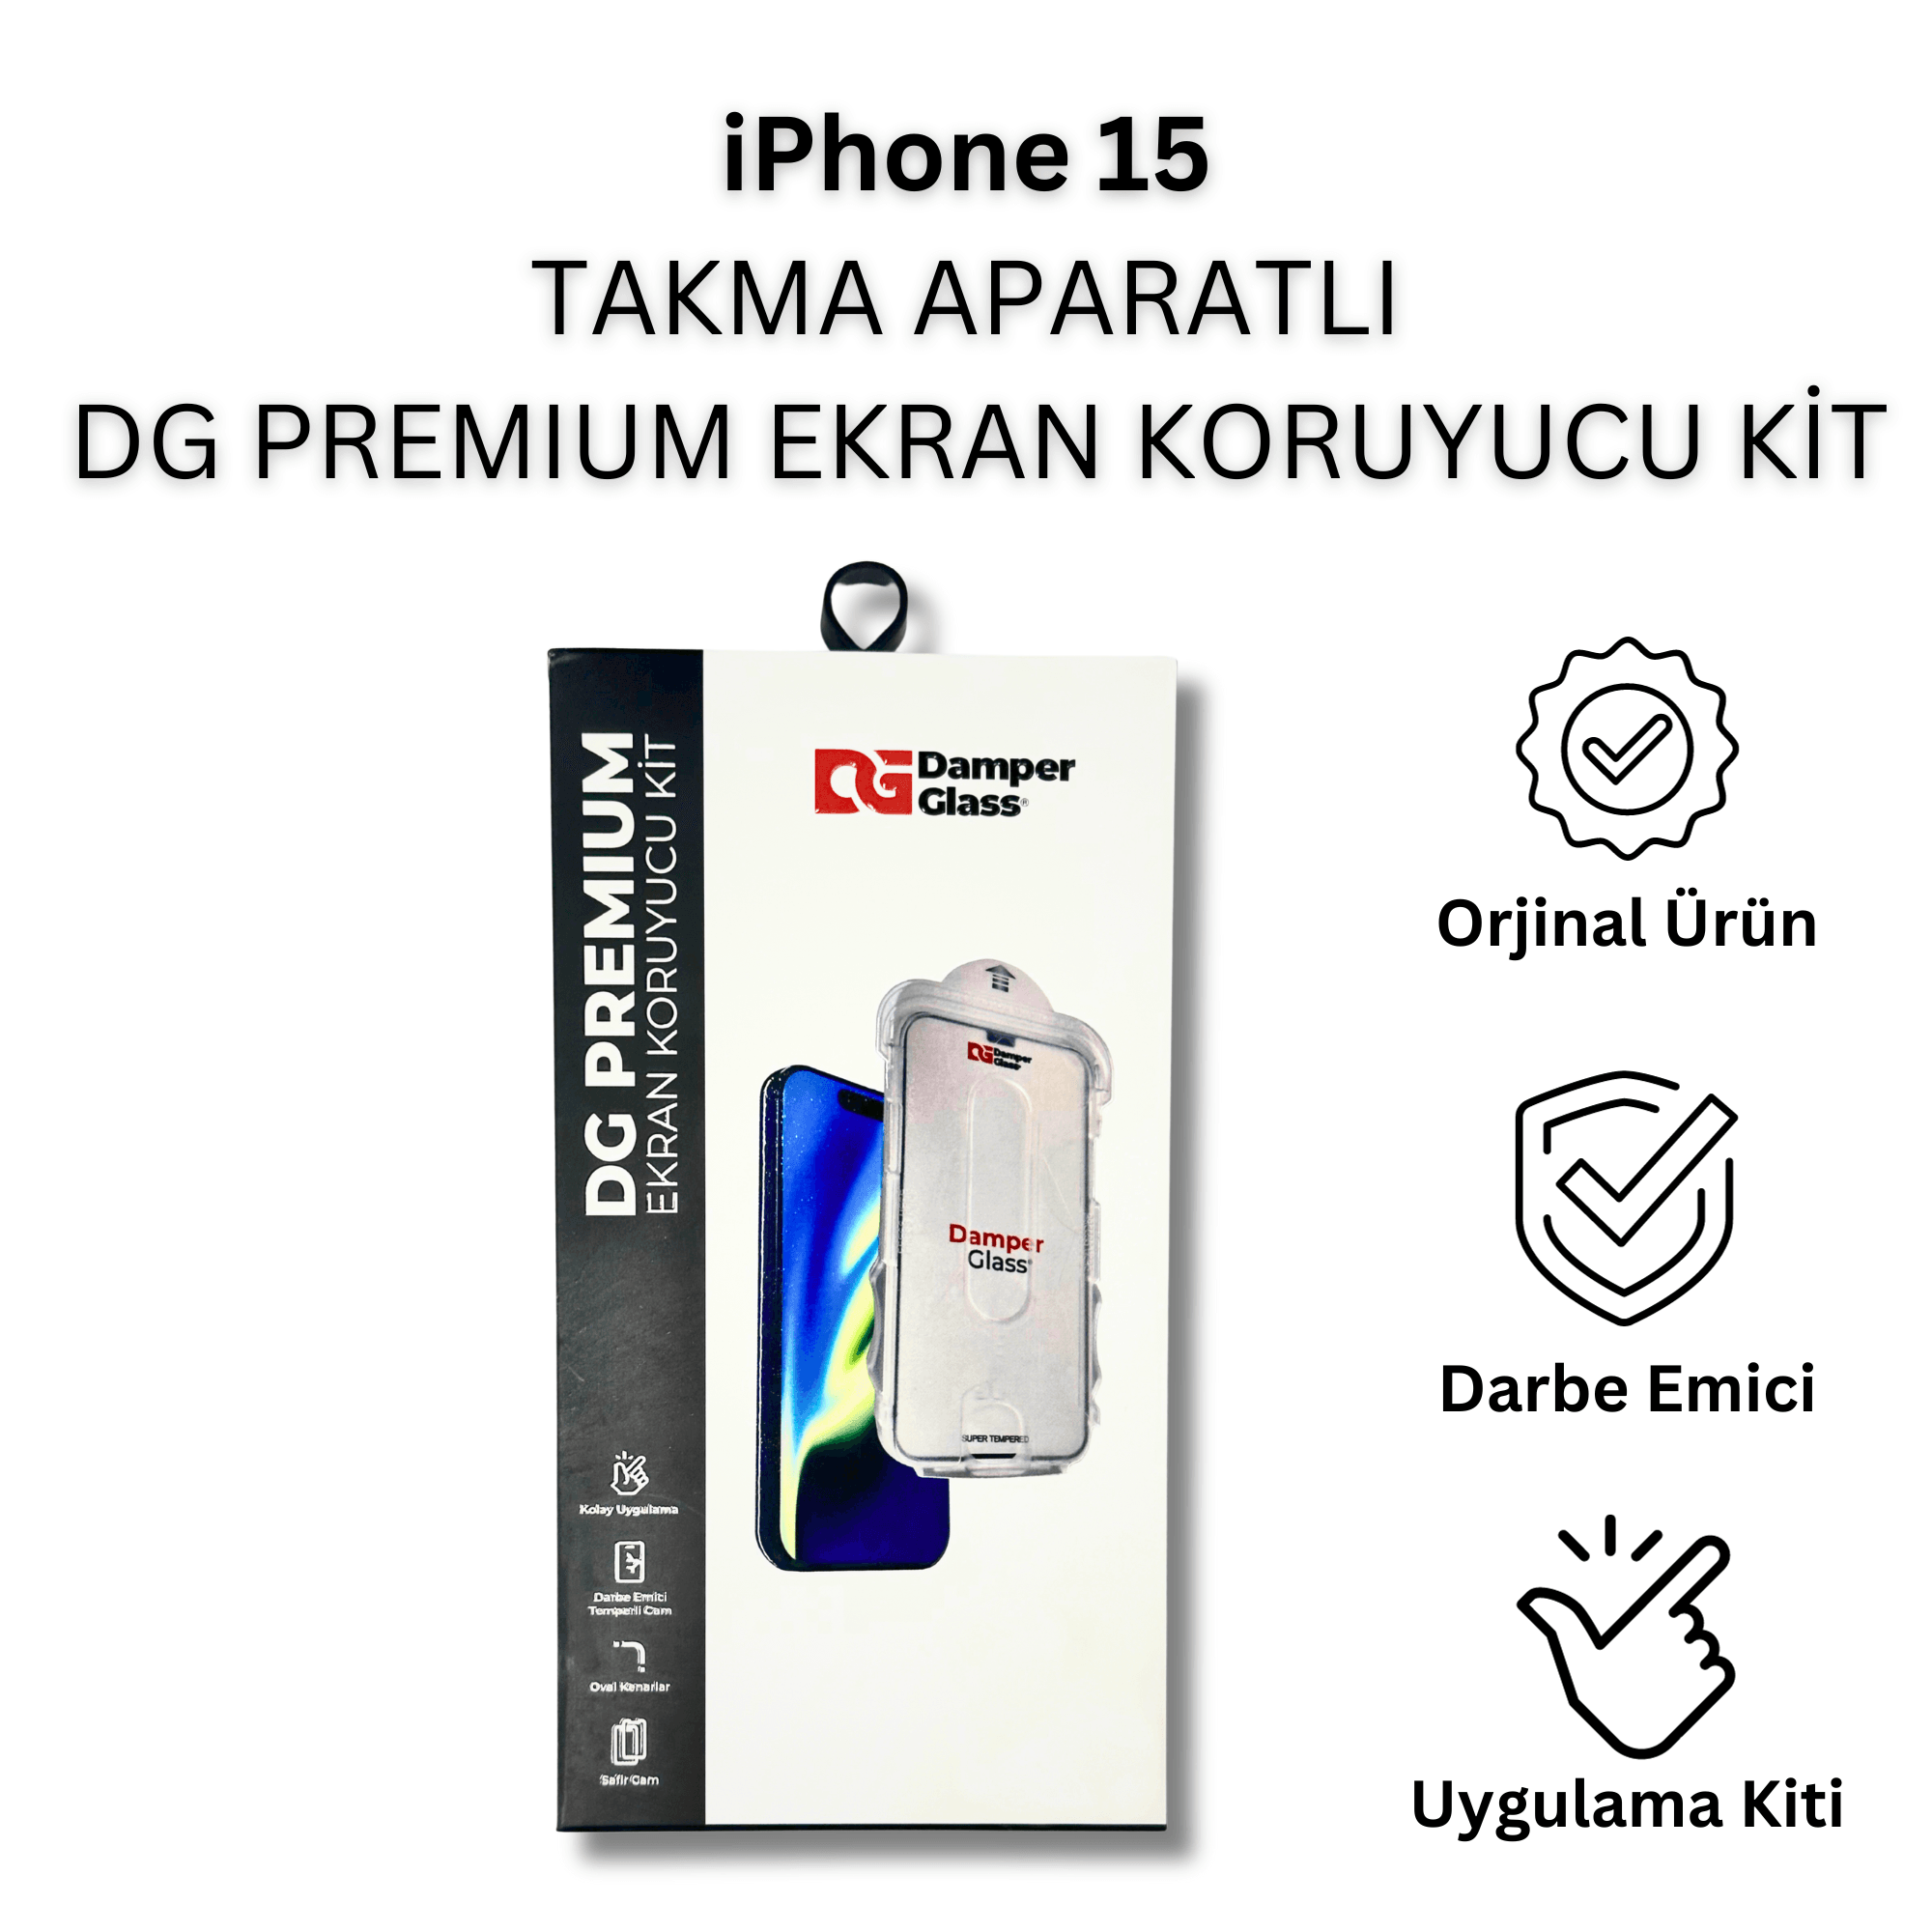 iPhone 15 DG Premium Takma Aparatlı Darbe Emici Ekran Koruyucu Kit